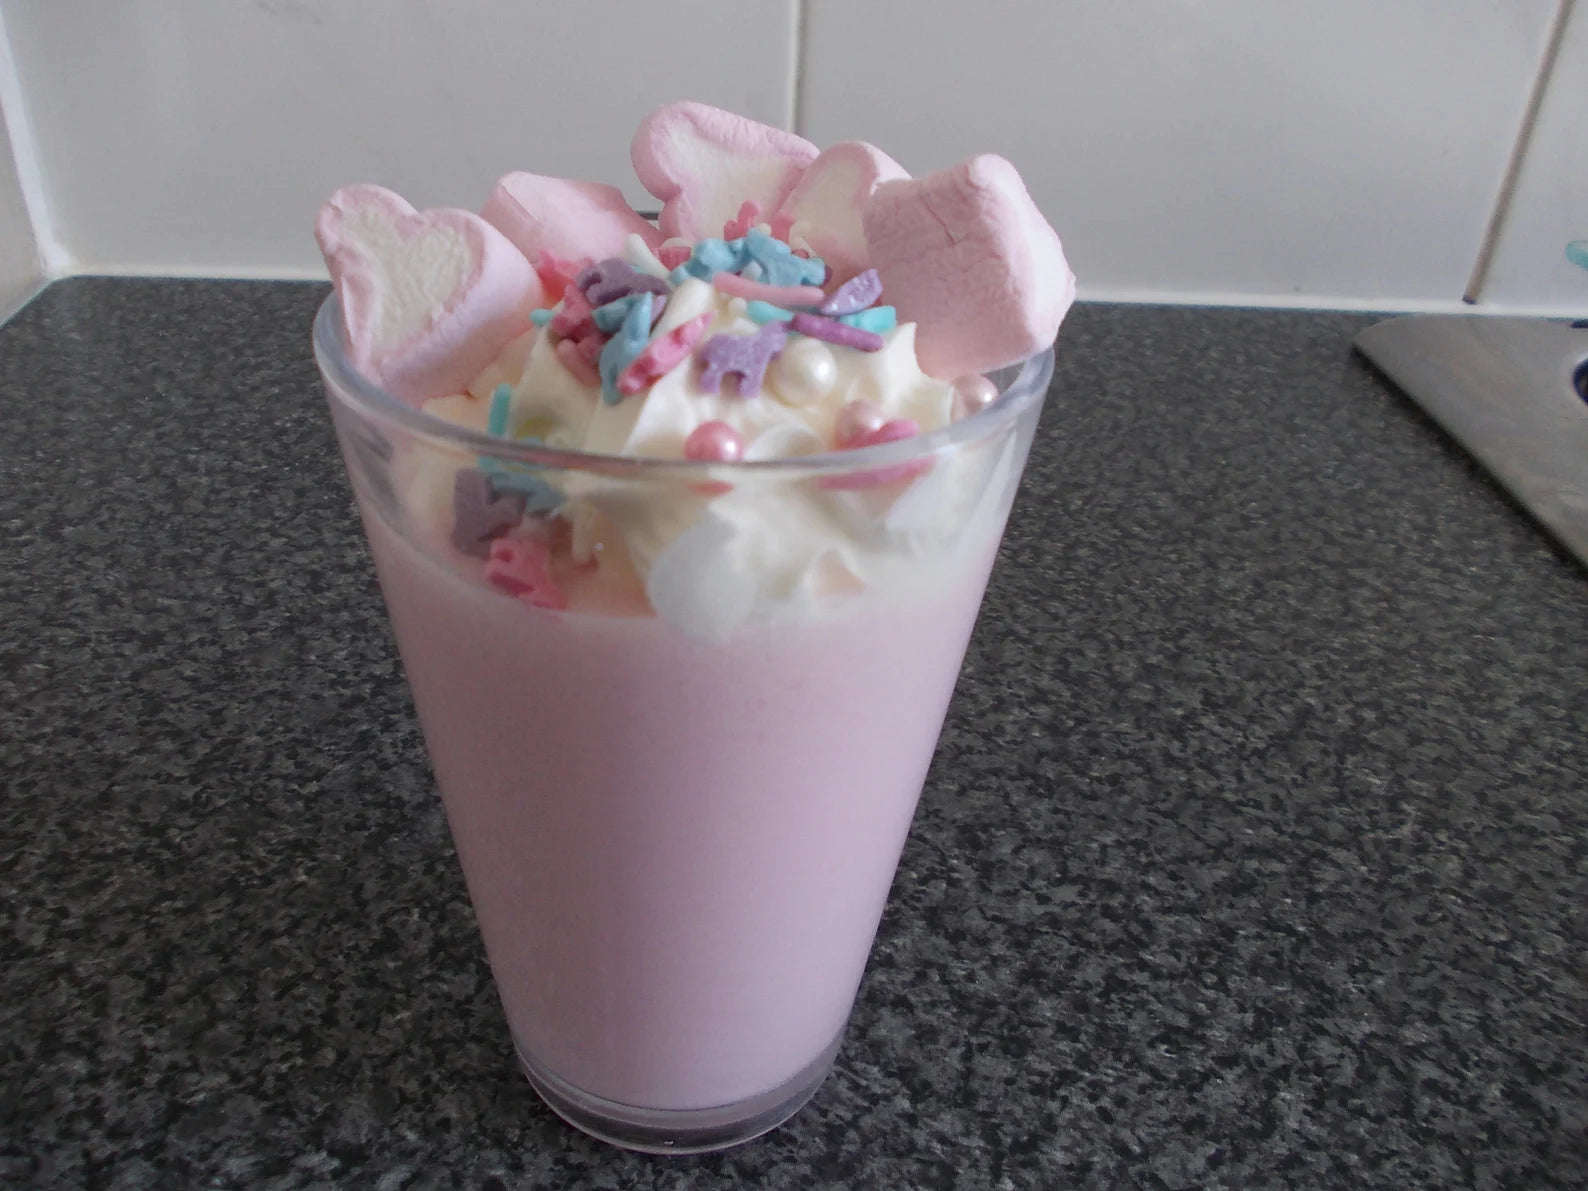 Unicorn milkshake kit gift box kids will love this magic milkshake as –  Sweet Gits and Treats